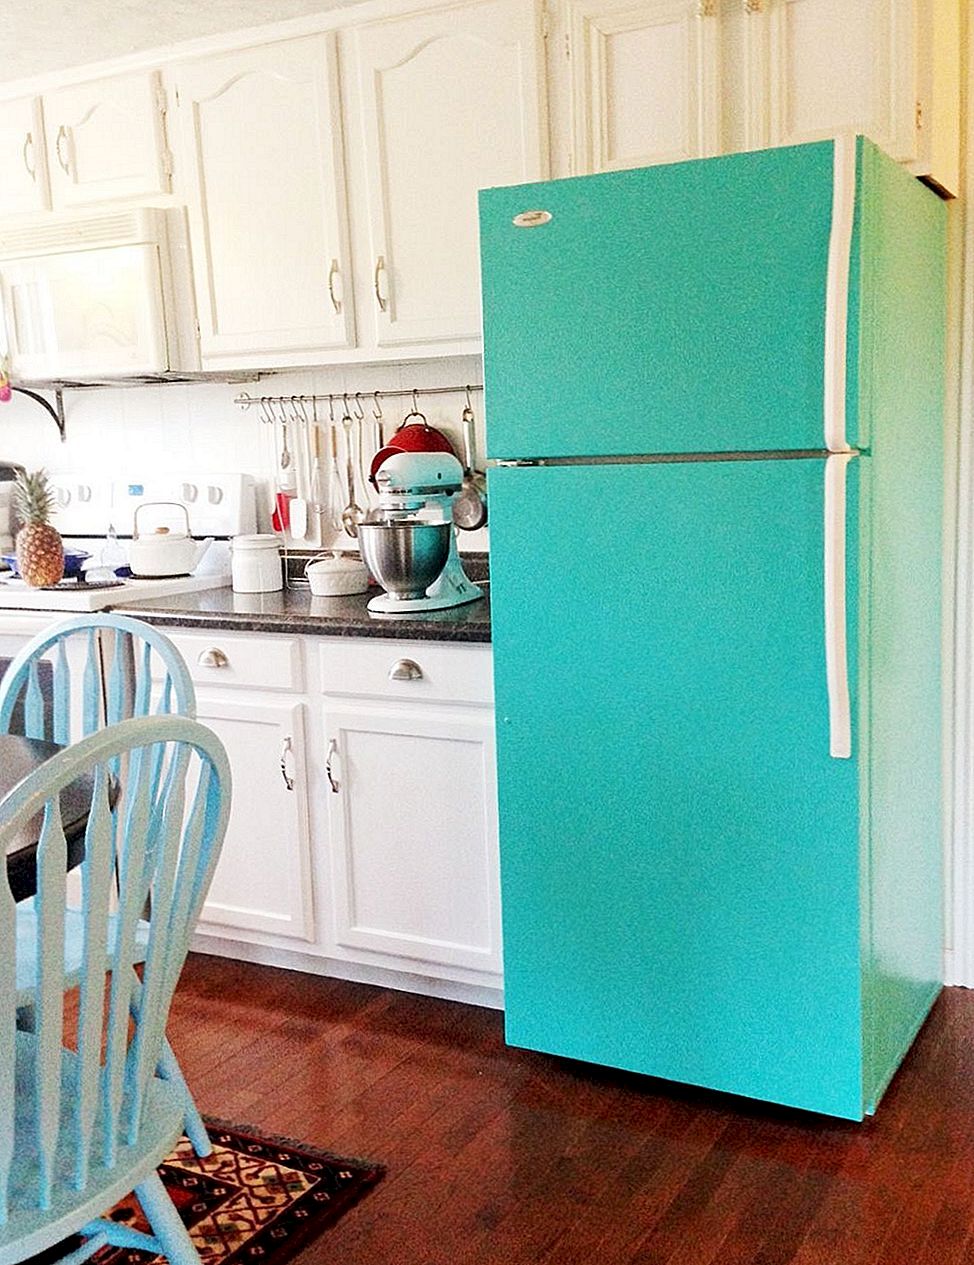 Απλοί και διασκεδαστικοί τρόποι να διακοσμήσεις το ψυγείο σου